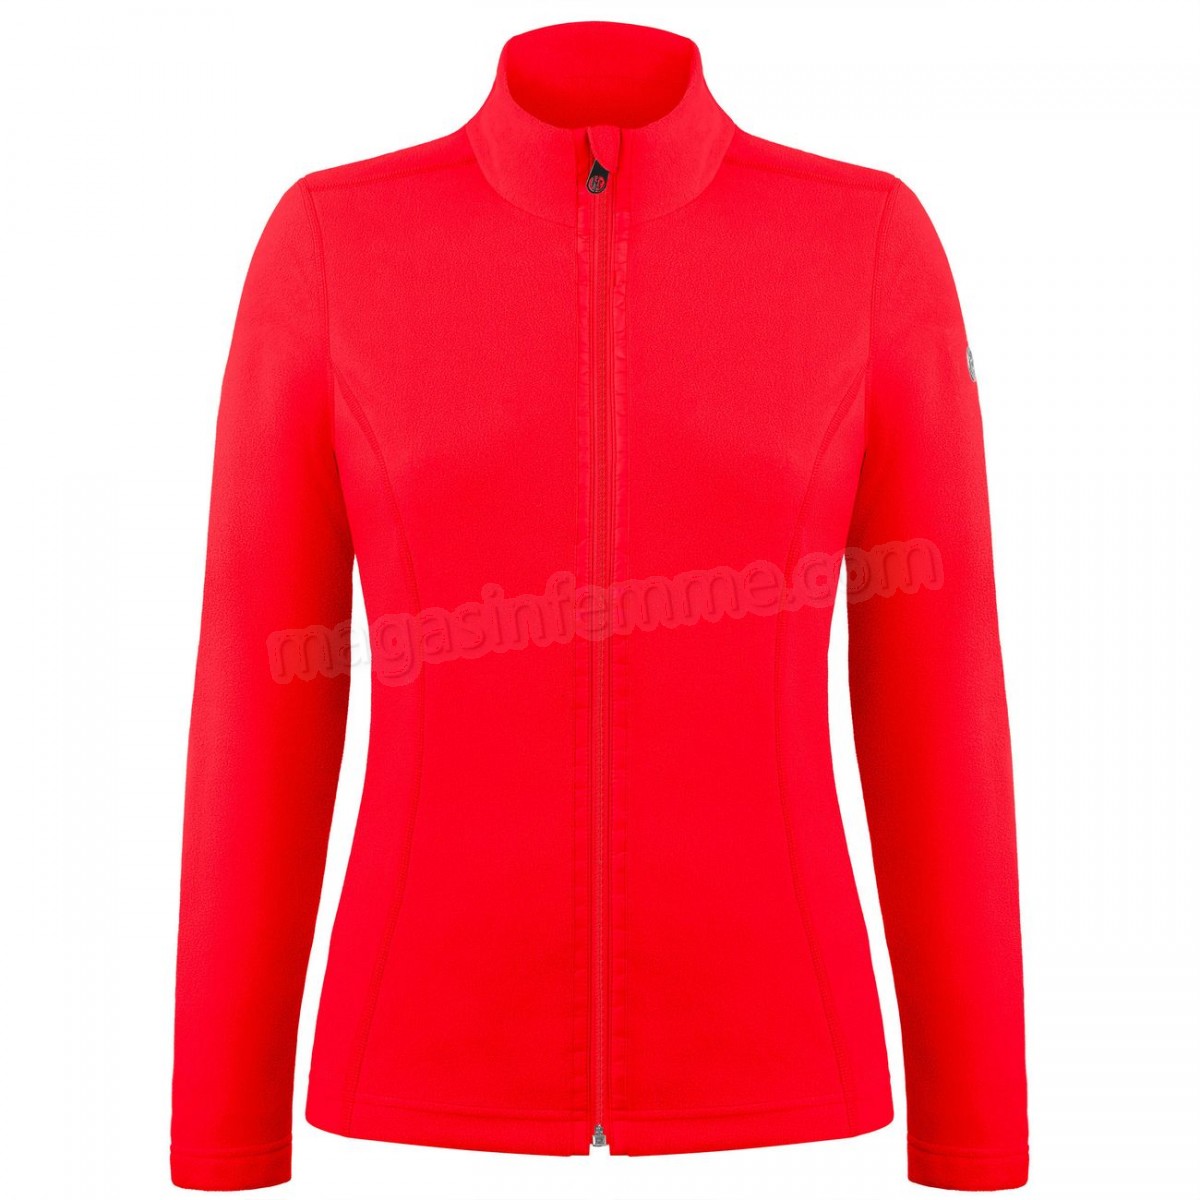 Poivre Blanc-Sports d'hiver femme POIVRE BLANC Veste Polaire Poivre Blanc Fleece Jacket 1500 Scarlet Red 5 Femme en solde - -1